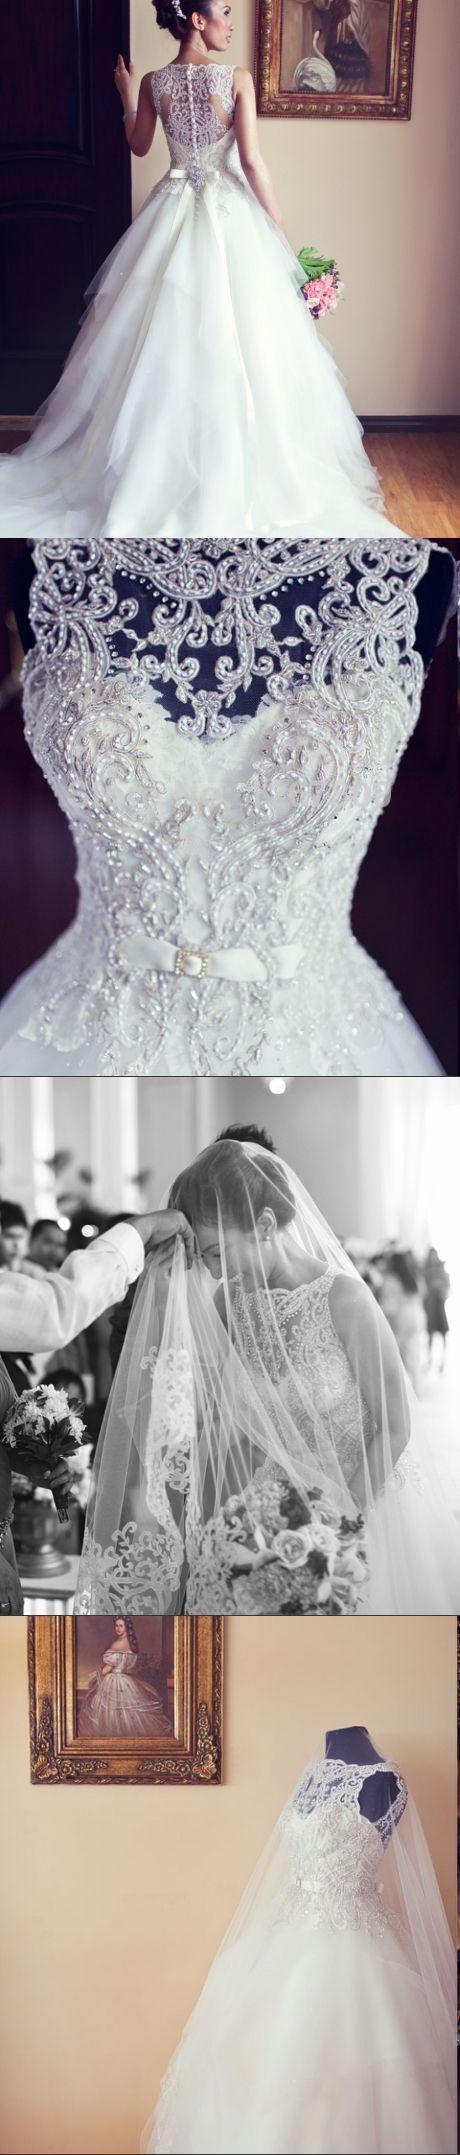 Wedding - Flare White Wedding Dress,Beading Sleeveless Bridal Dress,See Through Back Wedding Dress